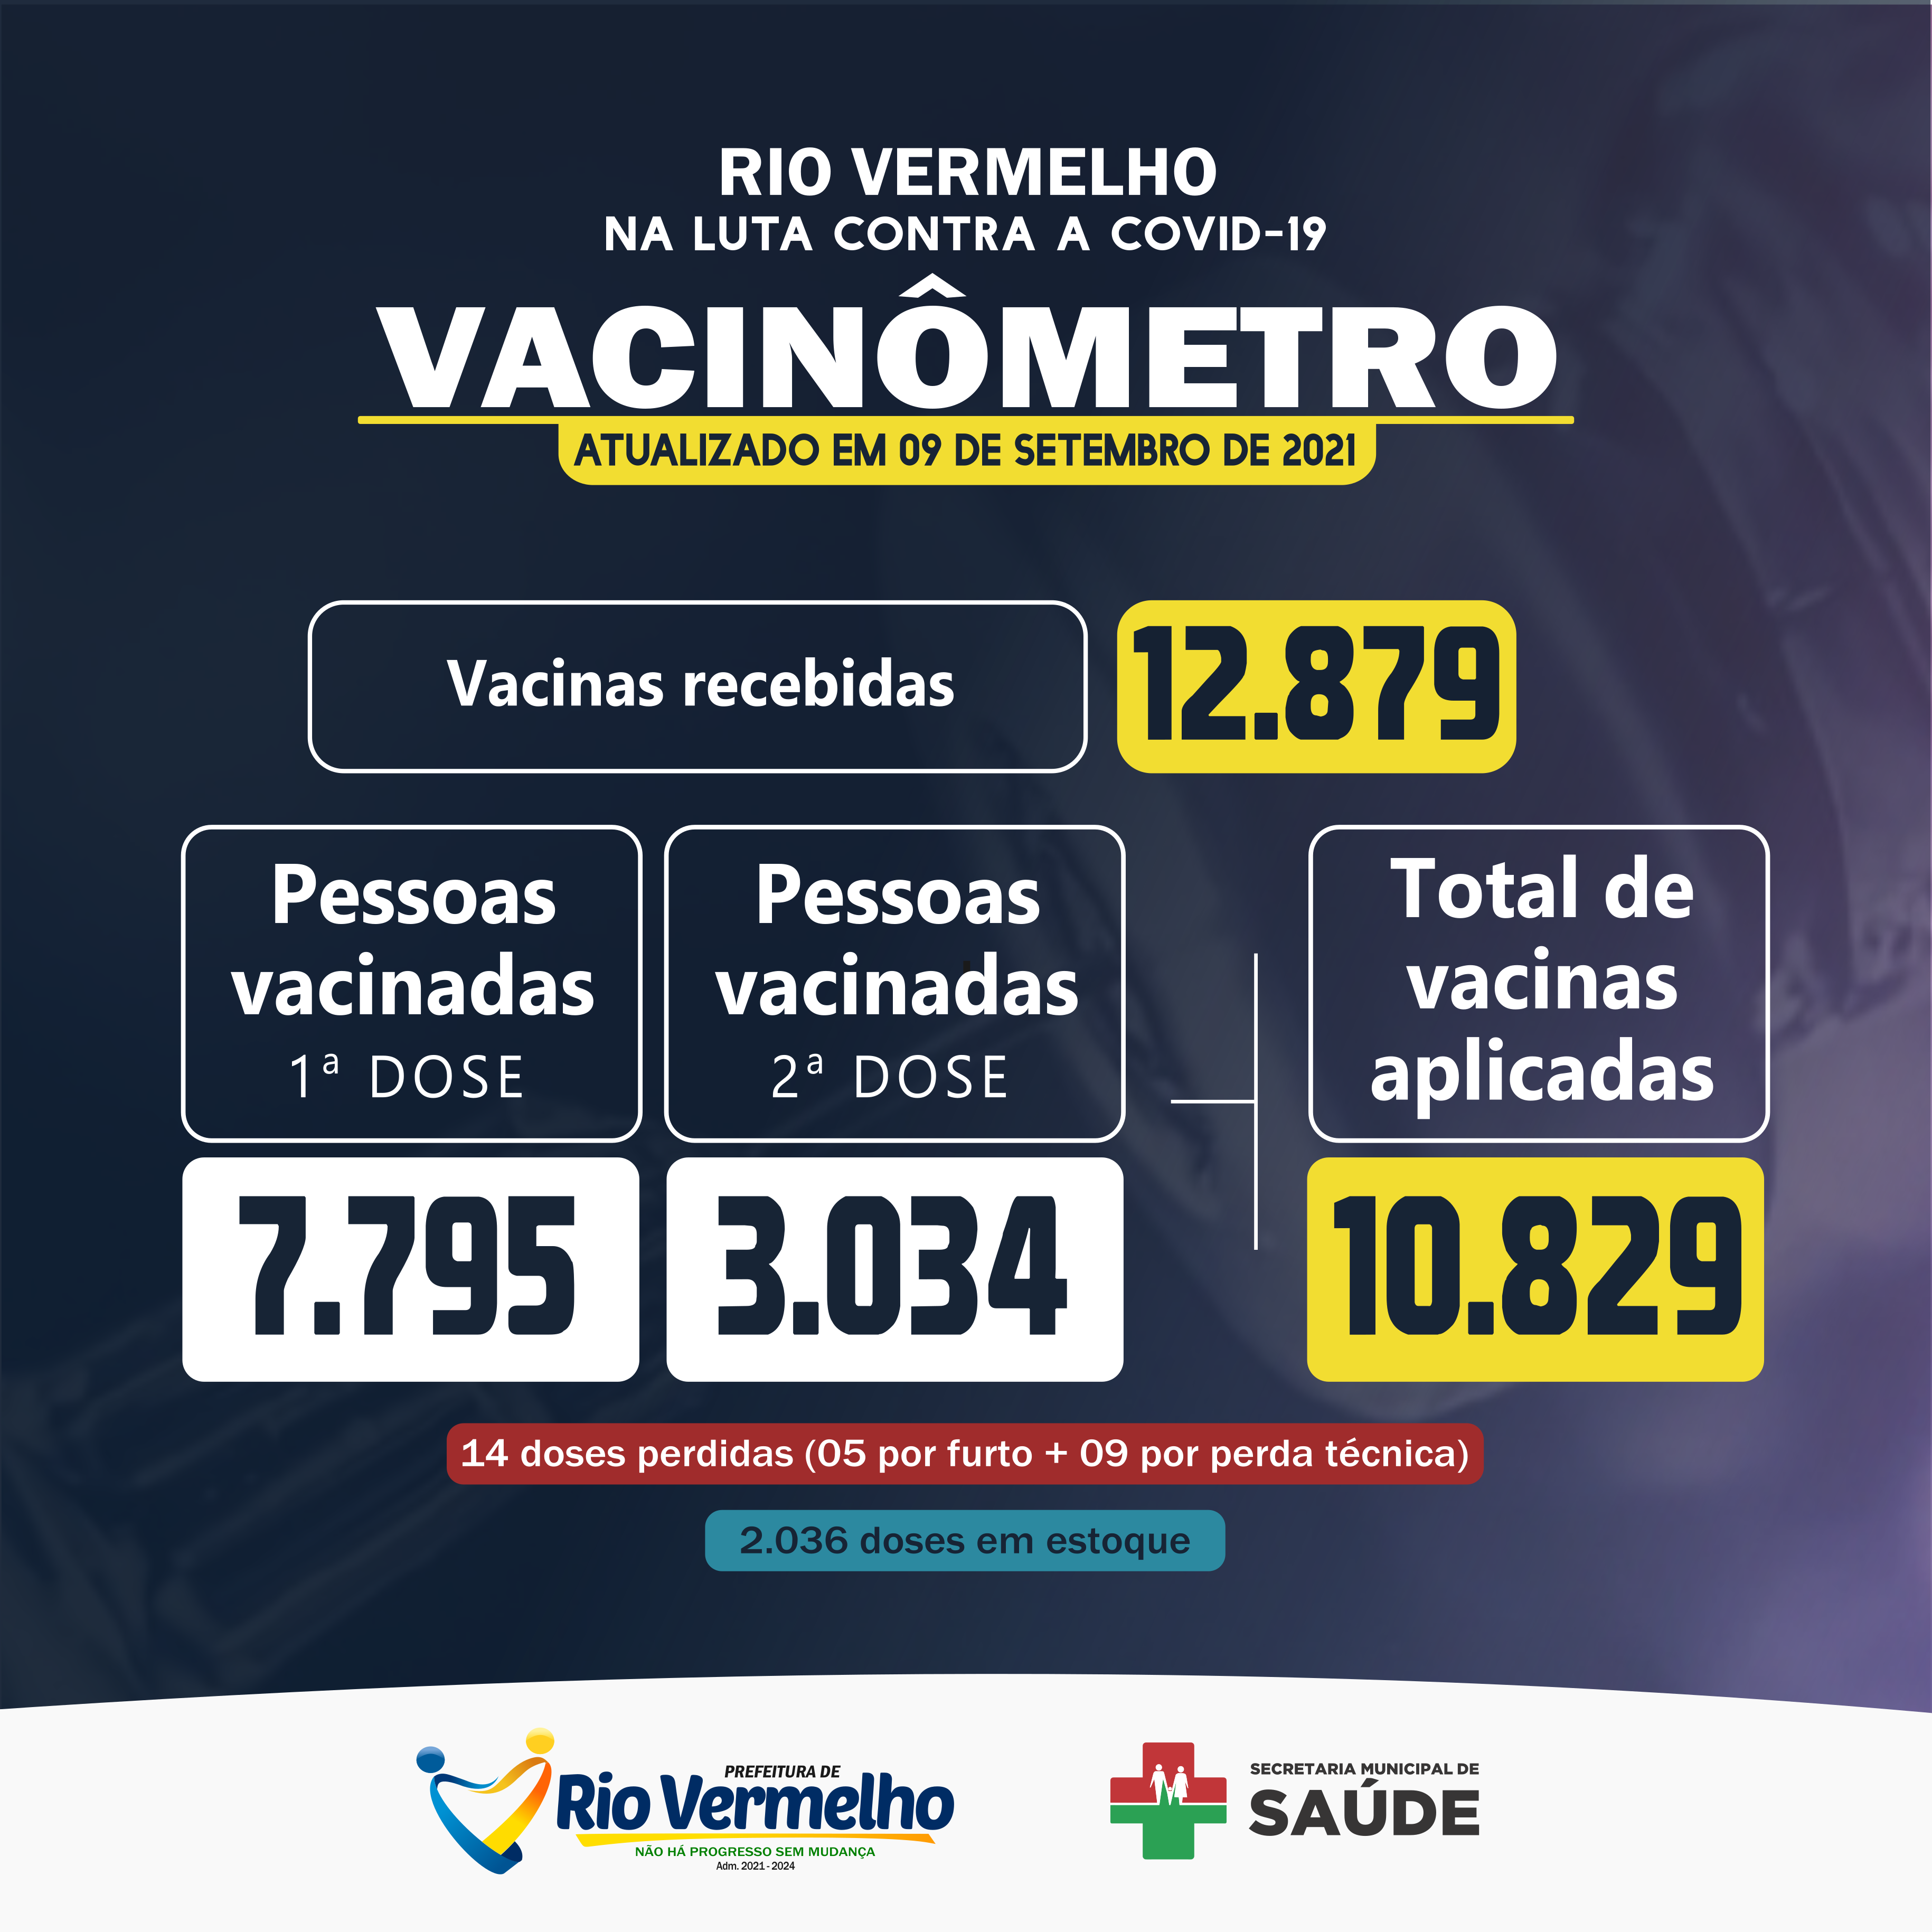 Você está visualizando atualmente VACINÔMETRO: Saiba como está a vacinação contra a COVID-19 em Rio Vermelho